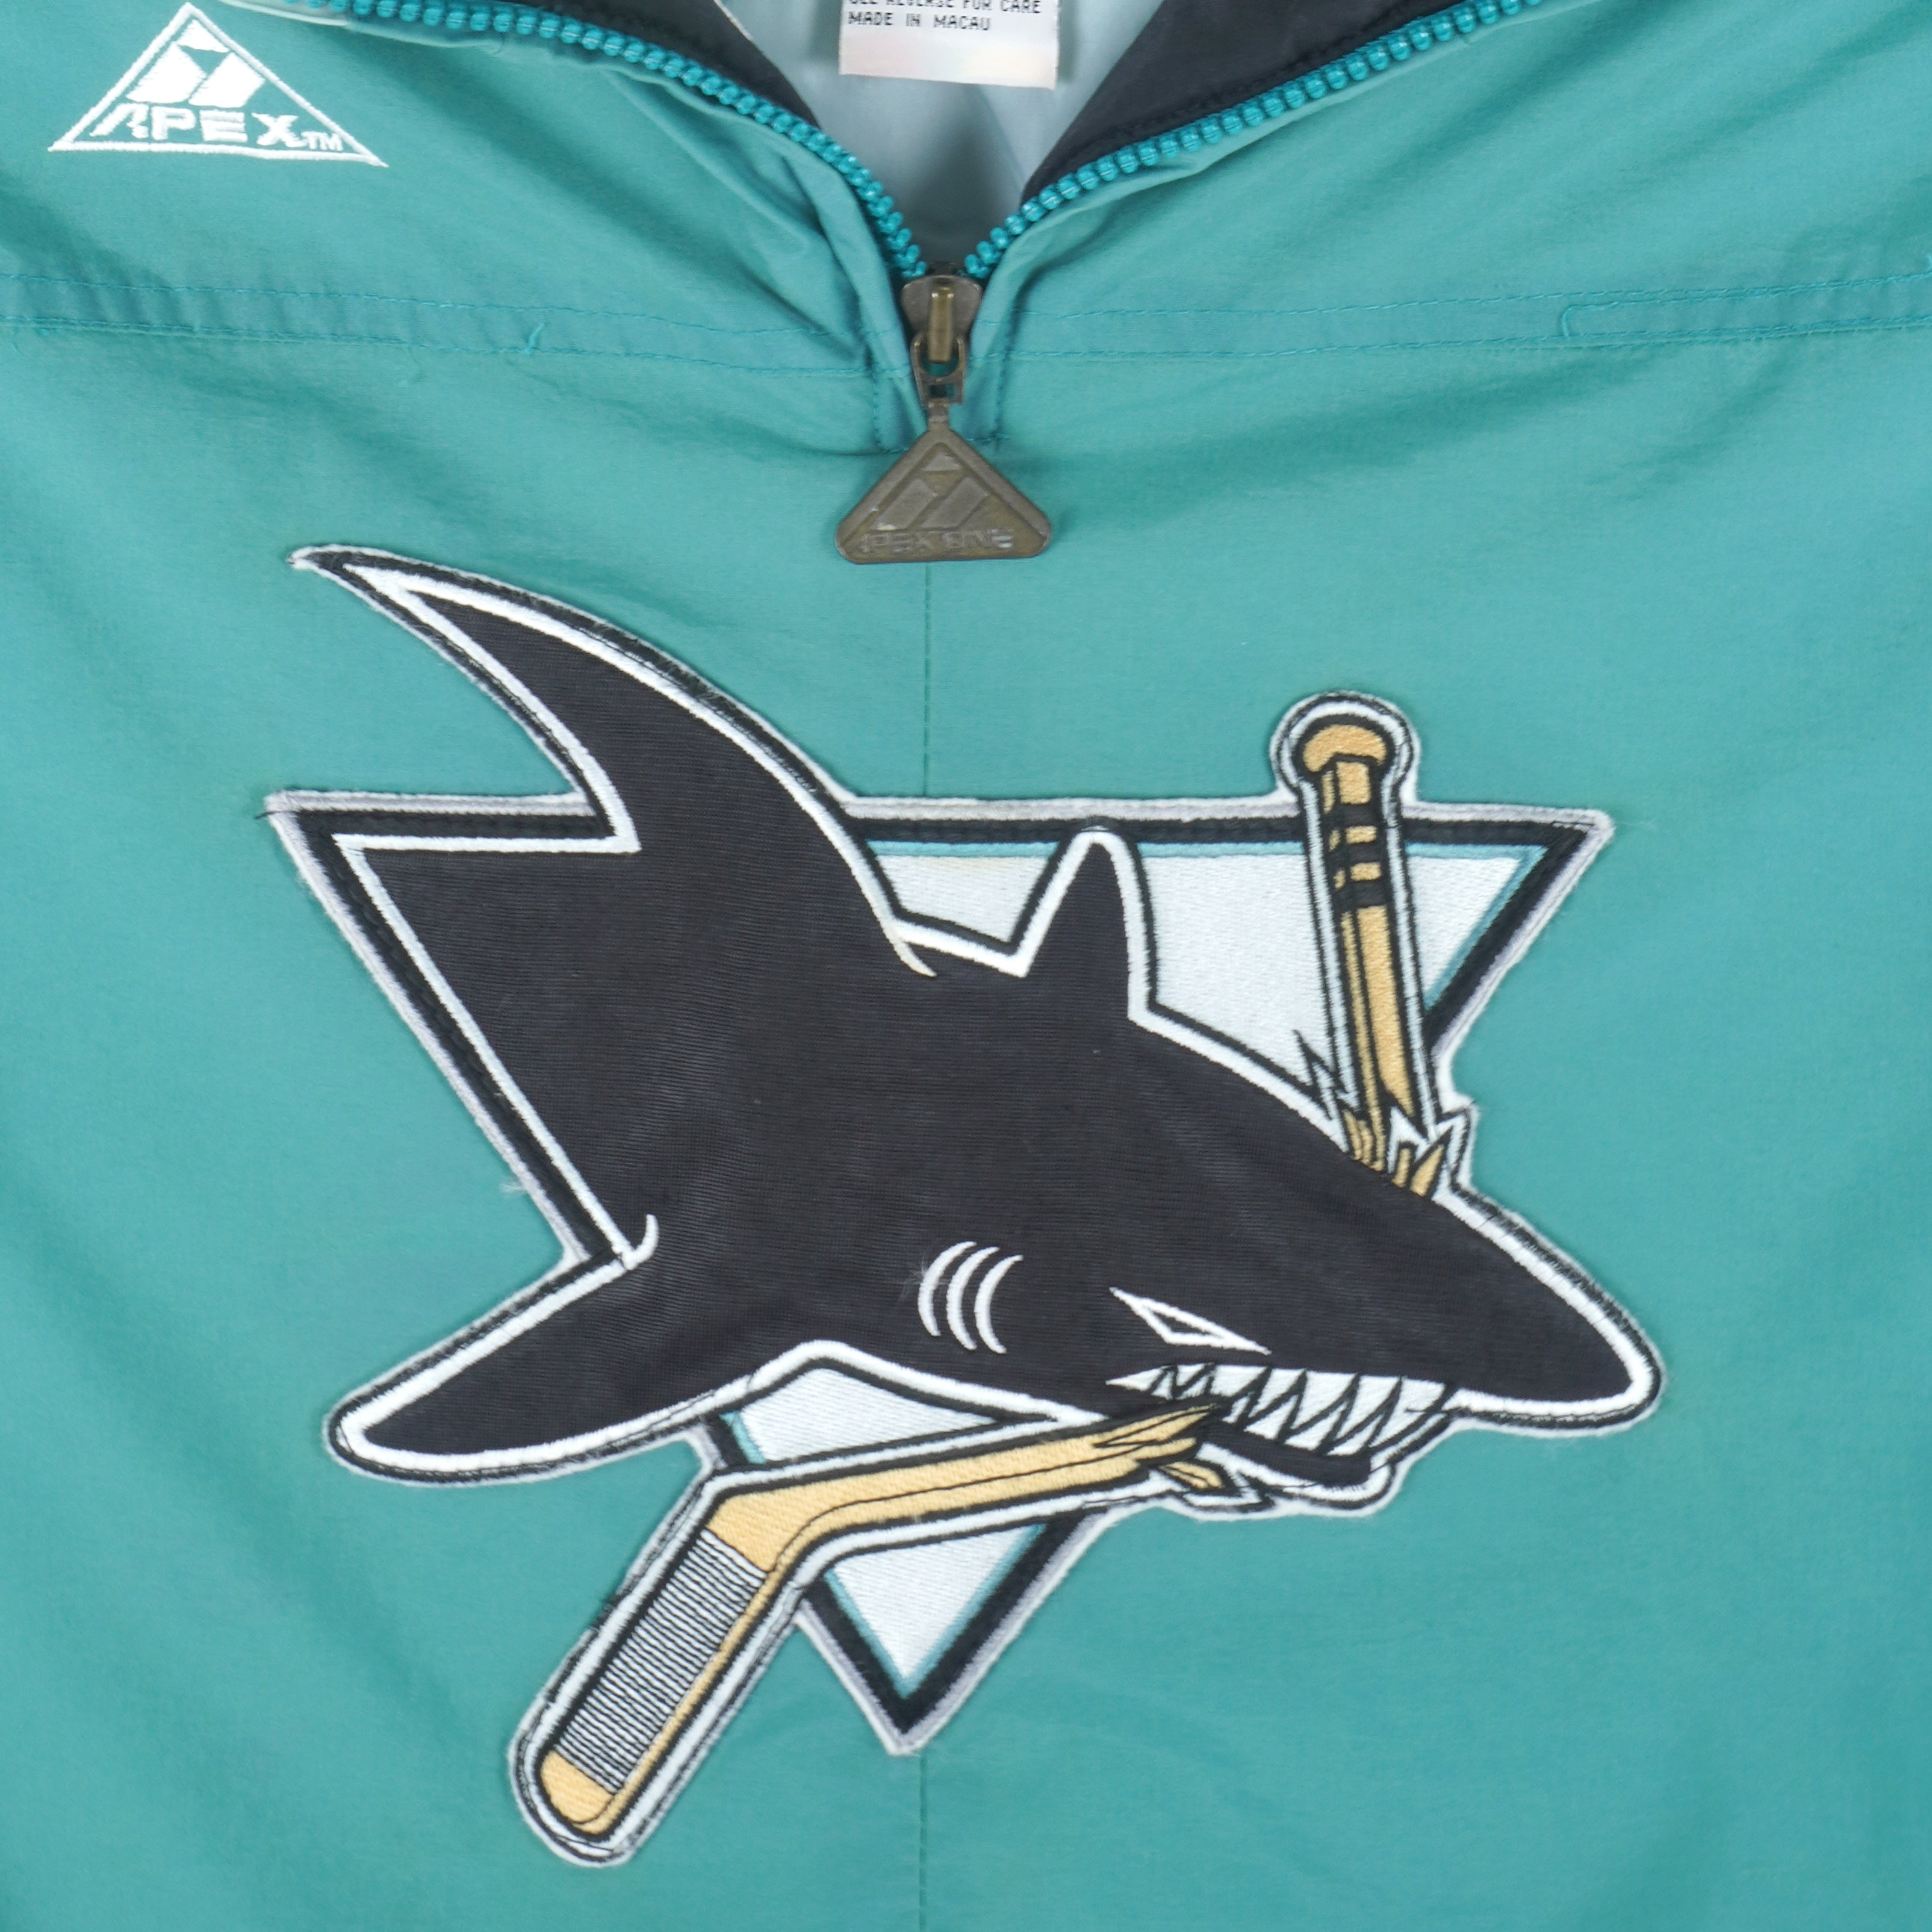 90s Vintage Starter NHL San Jose Sharks Hooded Puffer Jacket Large